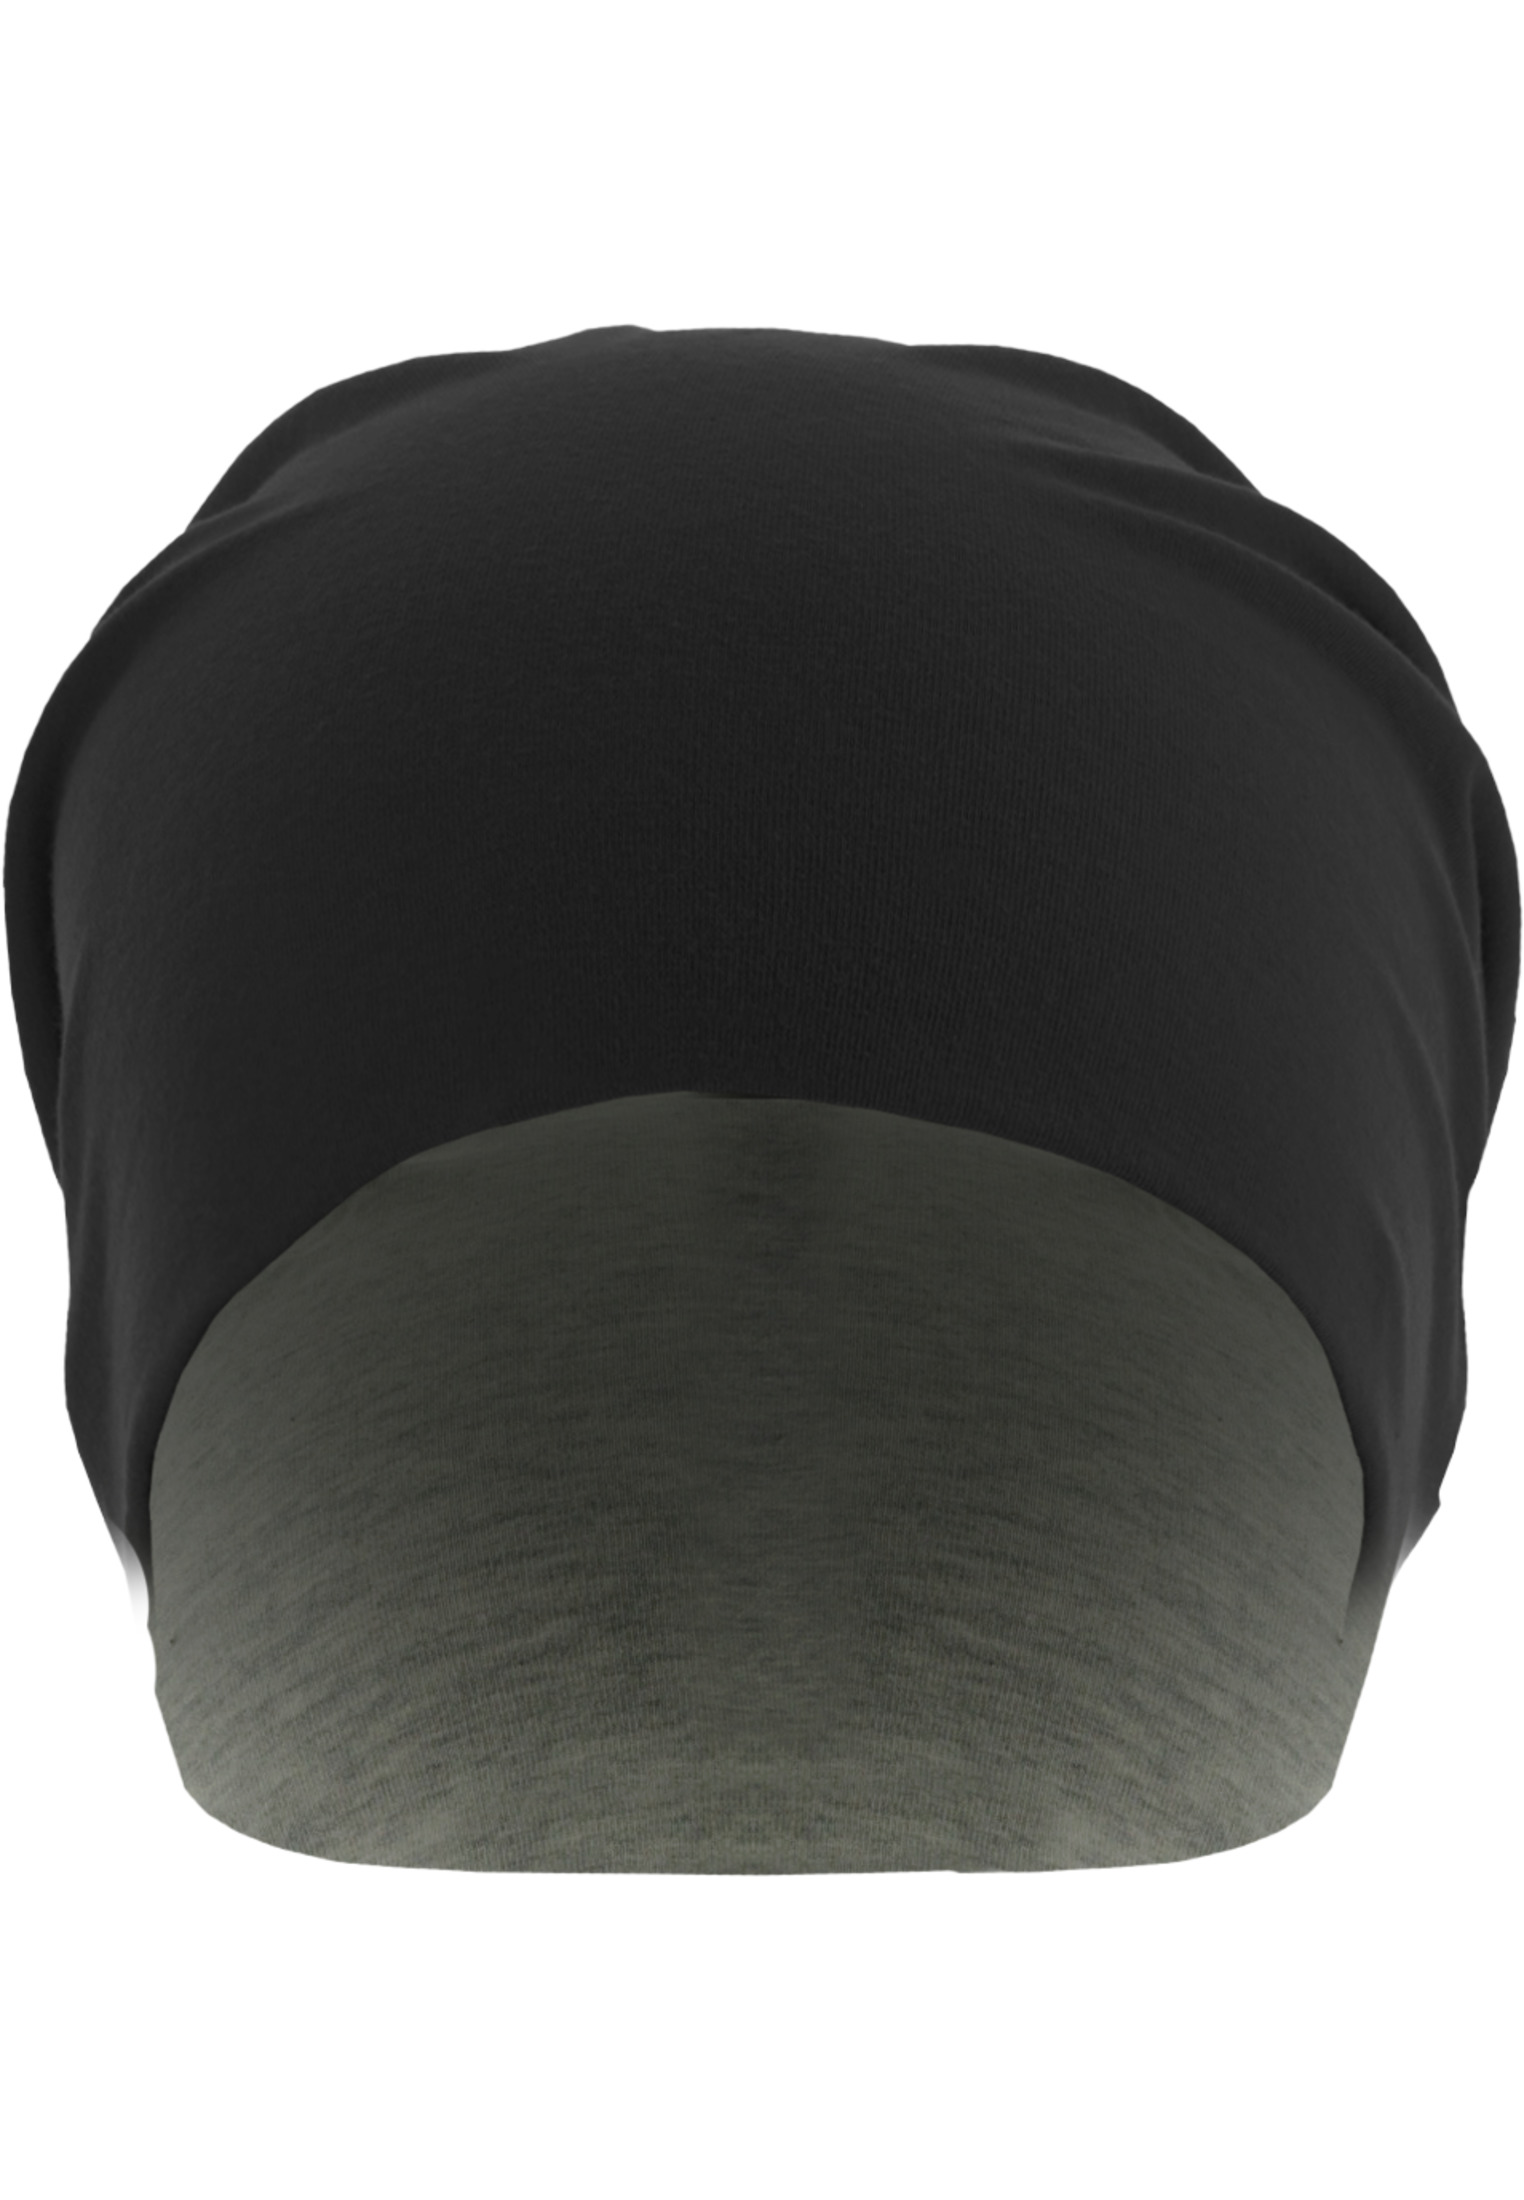 Jersey cap reversible blk/grey